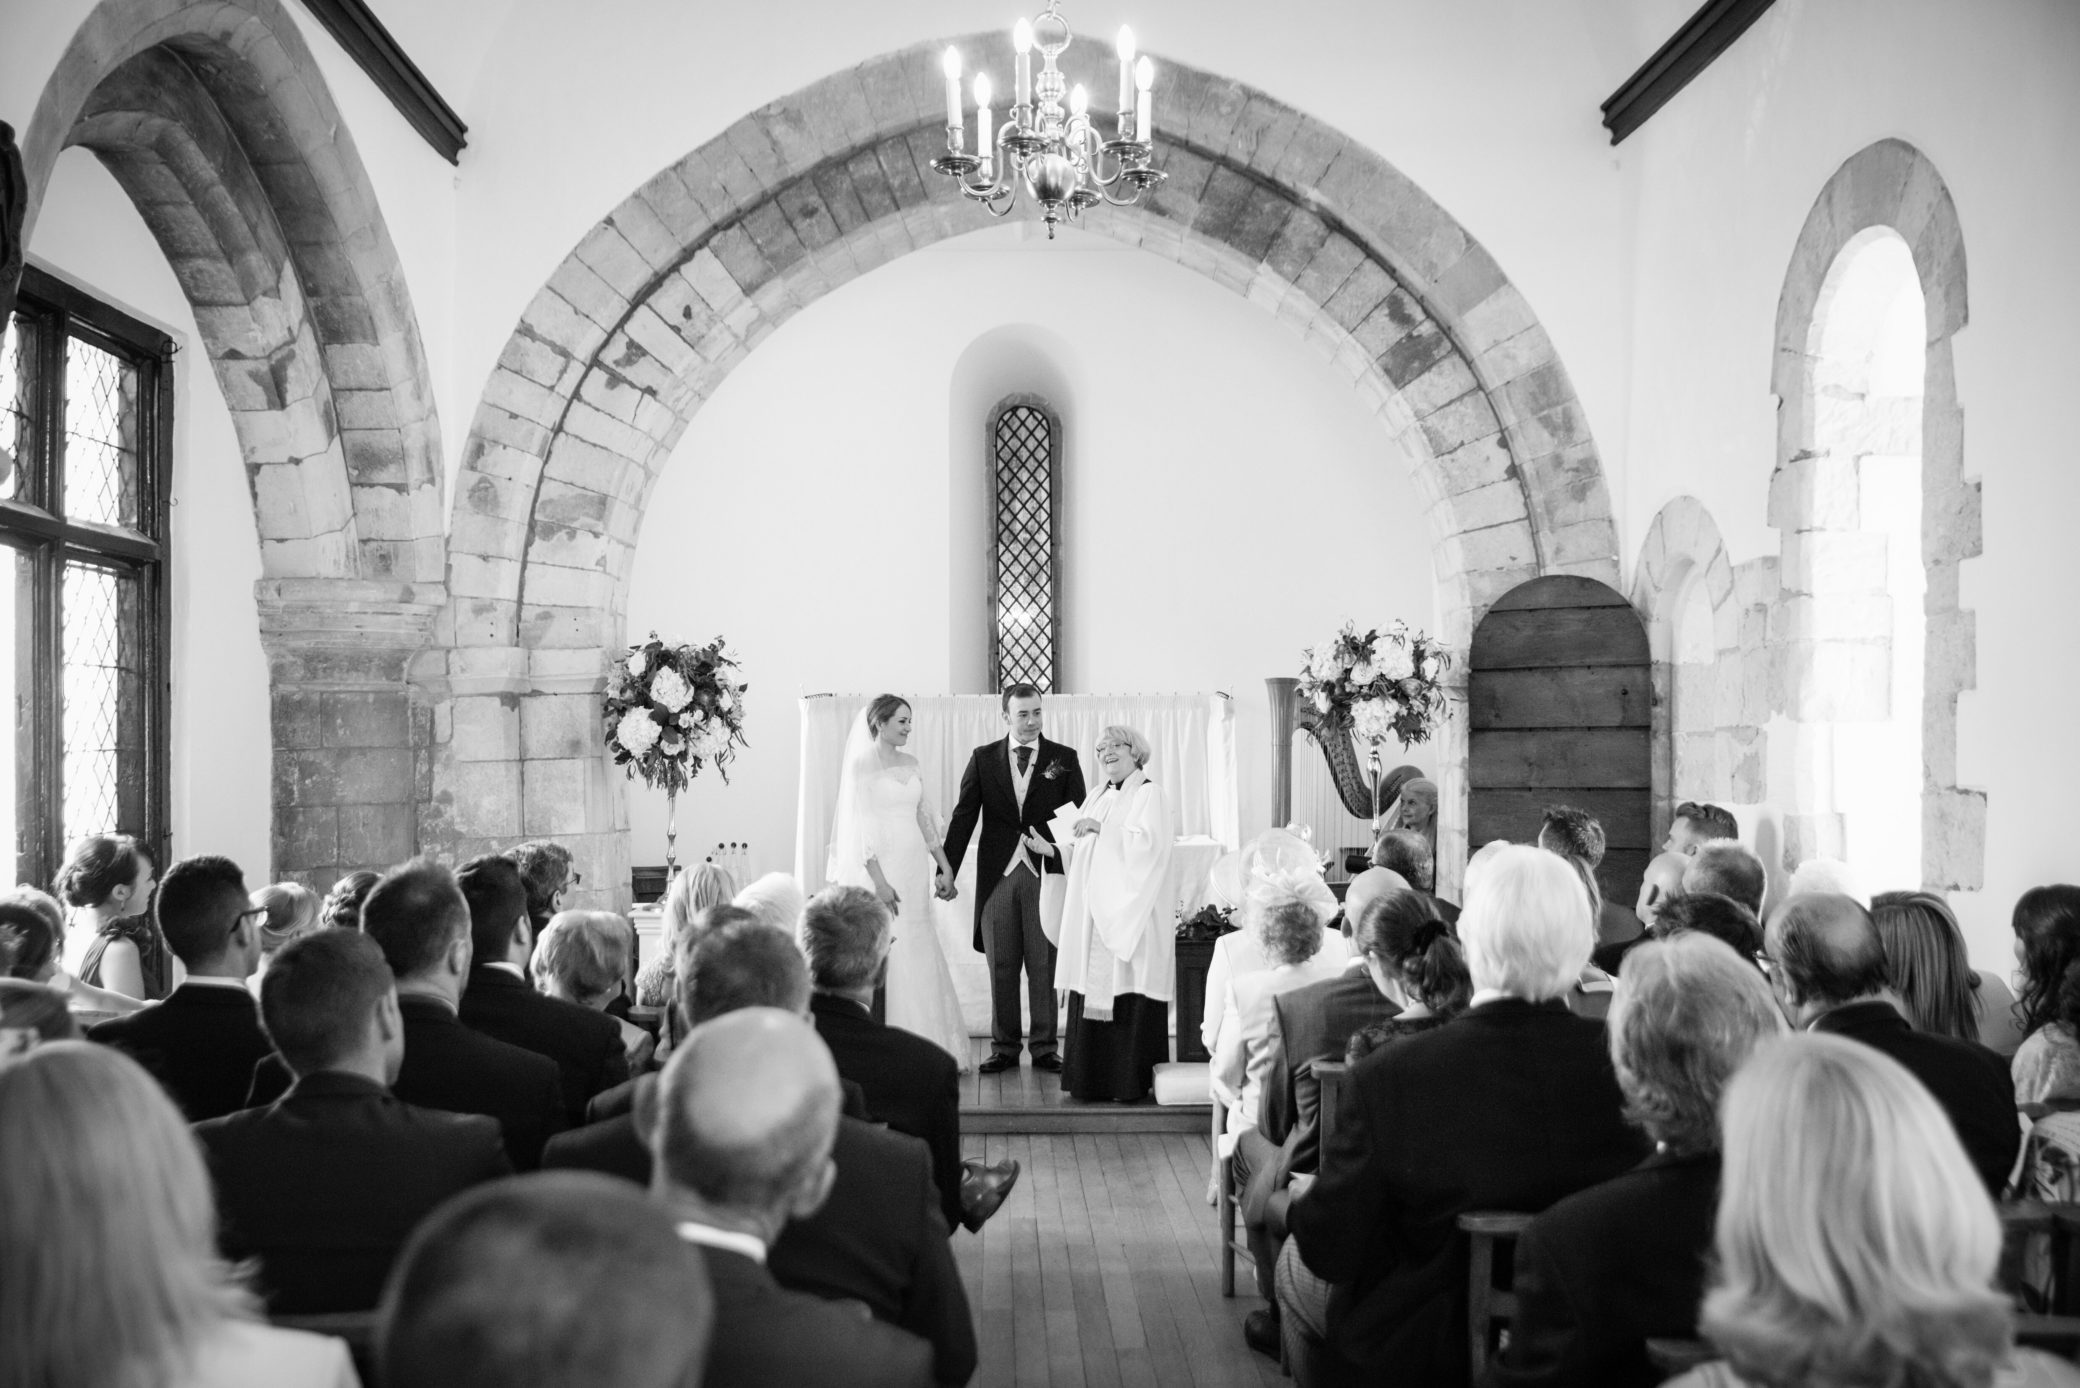 Chapel weddings at Farnham Castle in Surrey